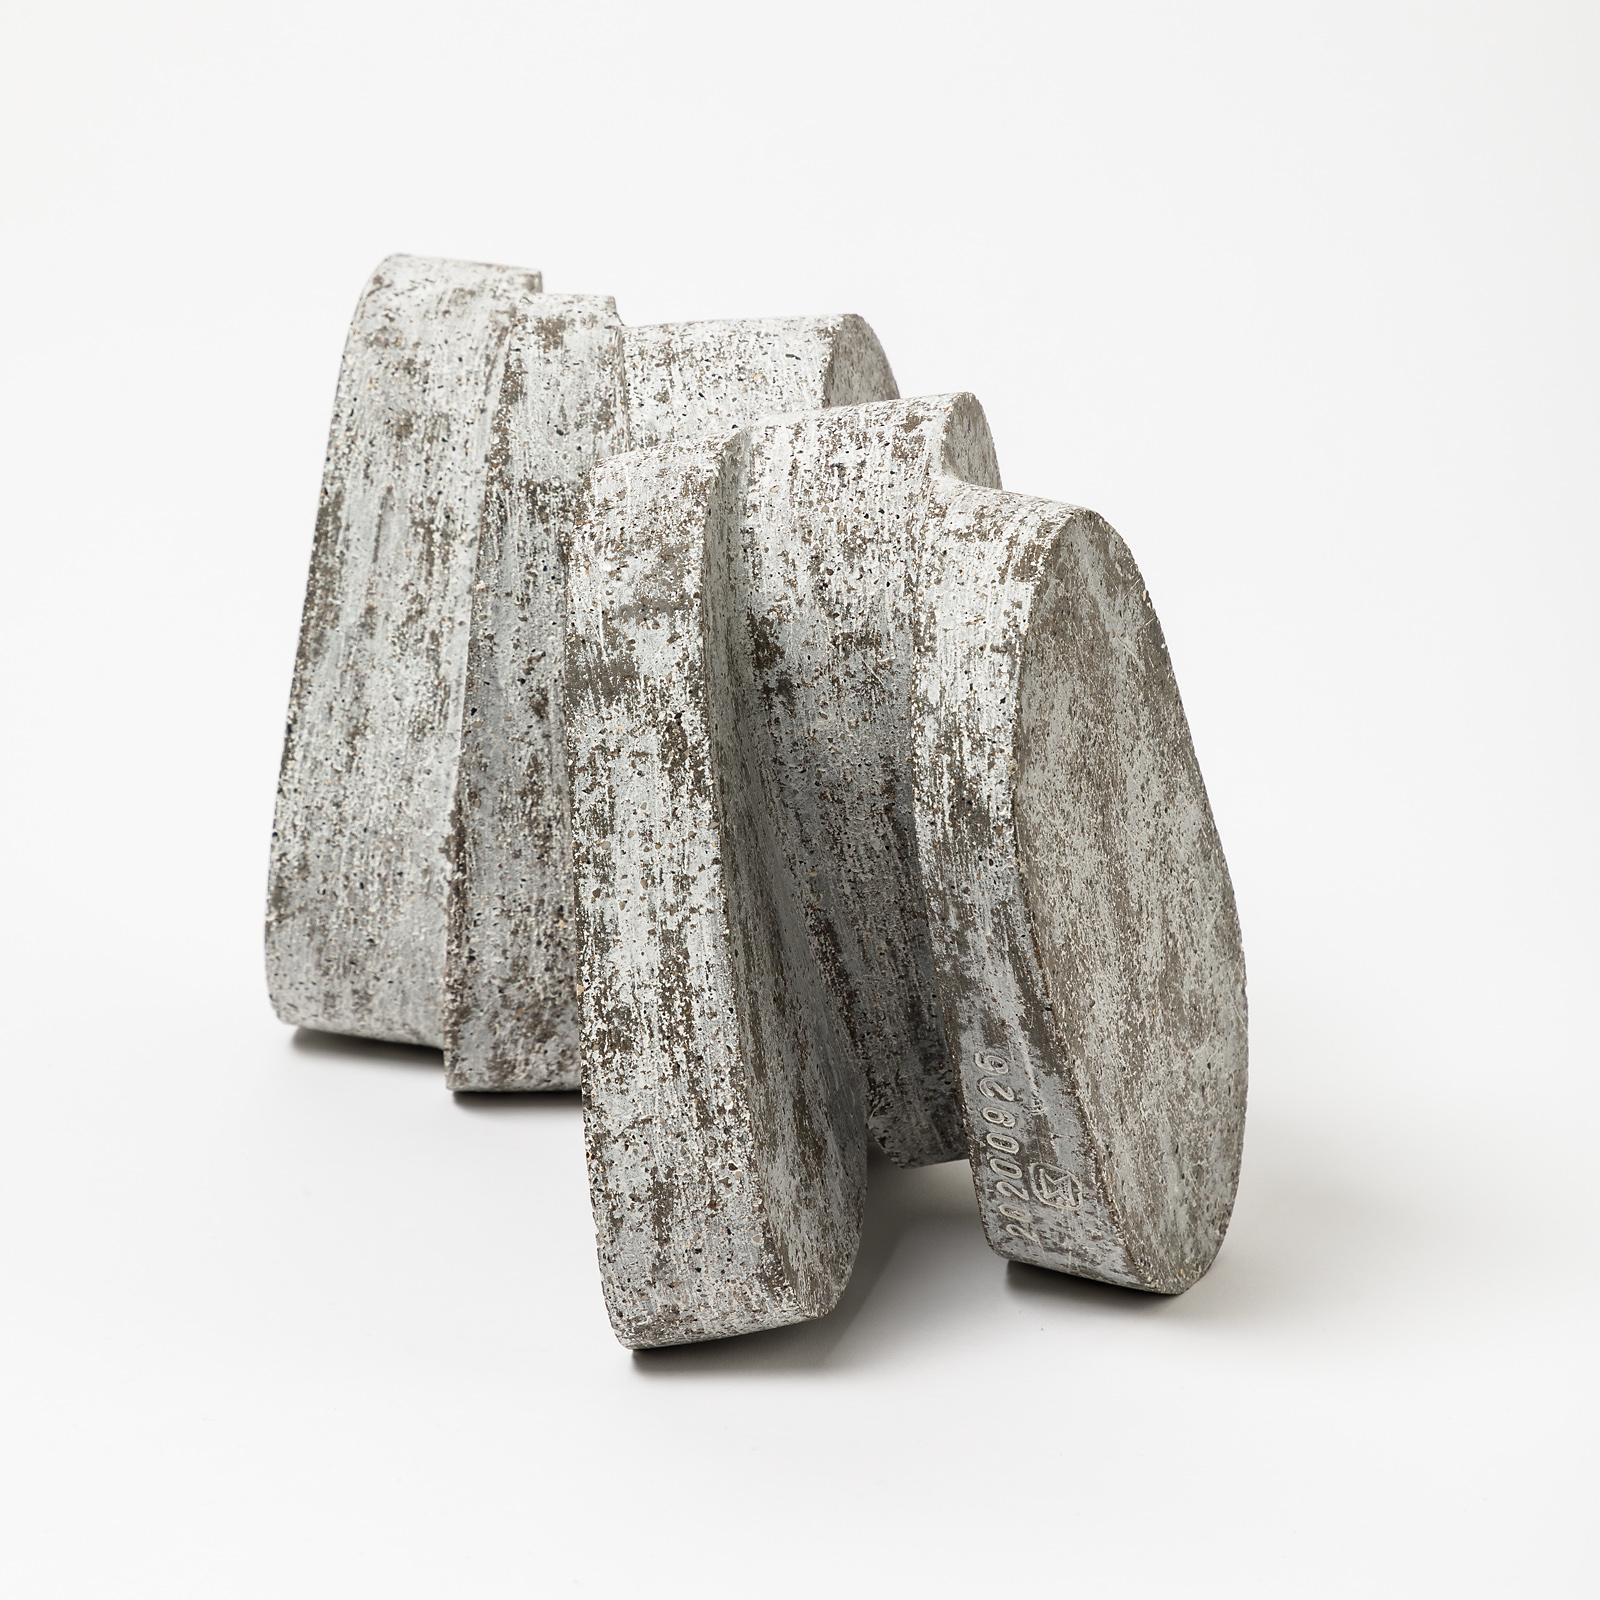 Ceramic Stoneware Sculpture by Maarten Stuer, Entitled 